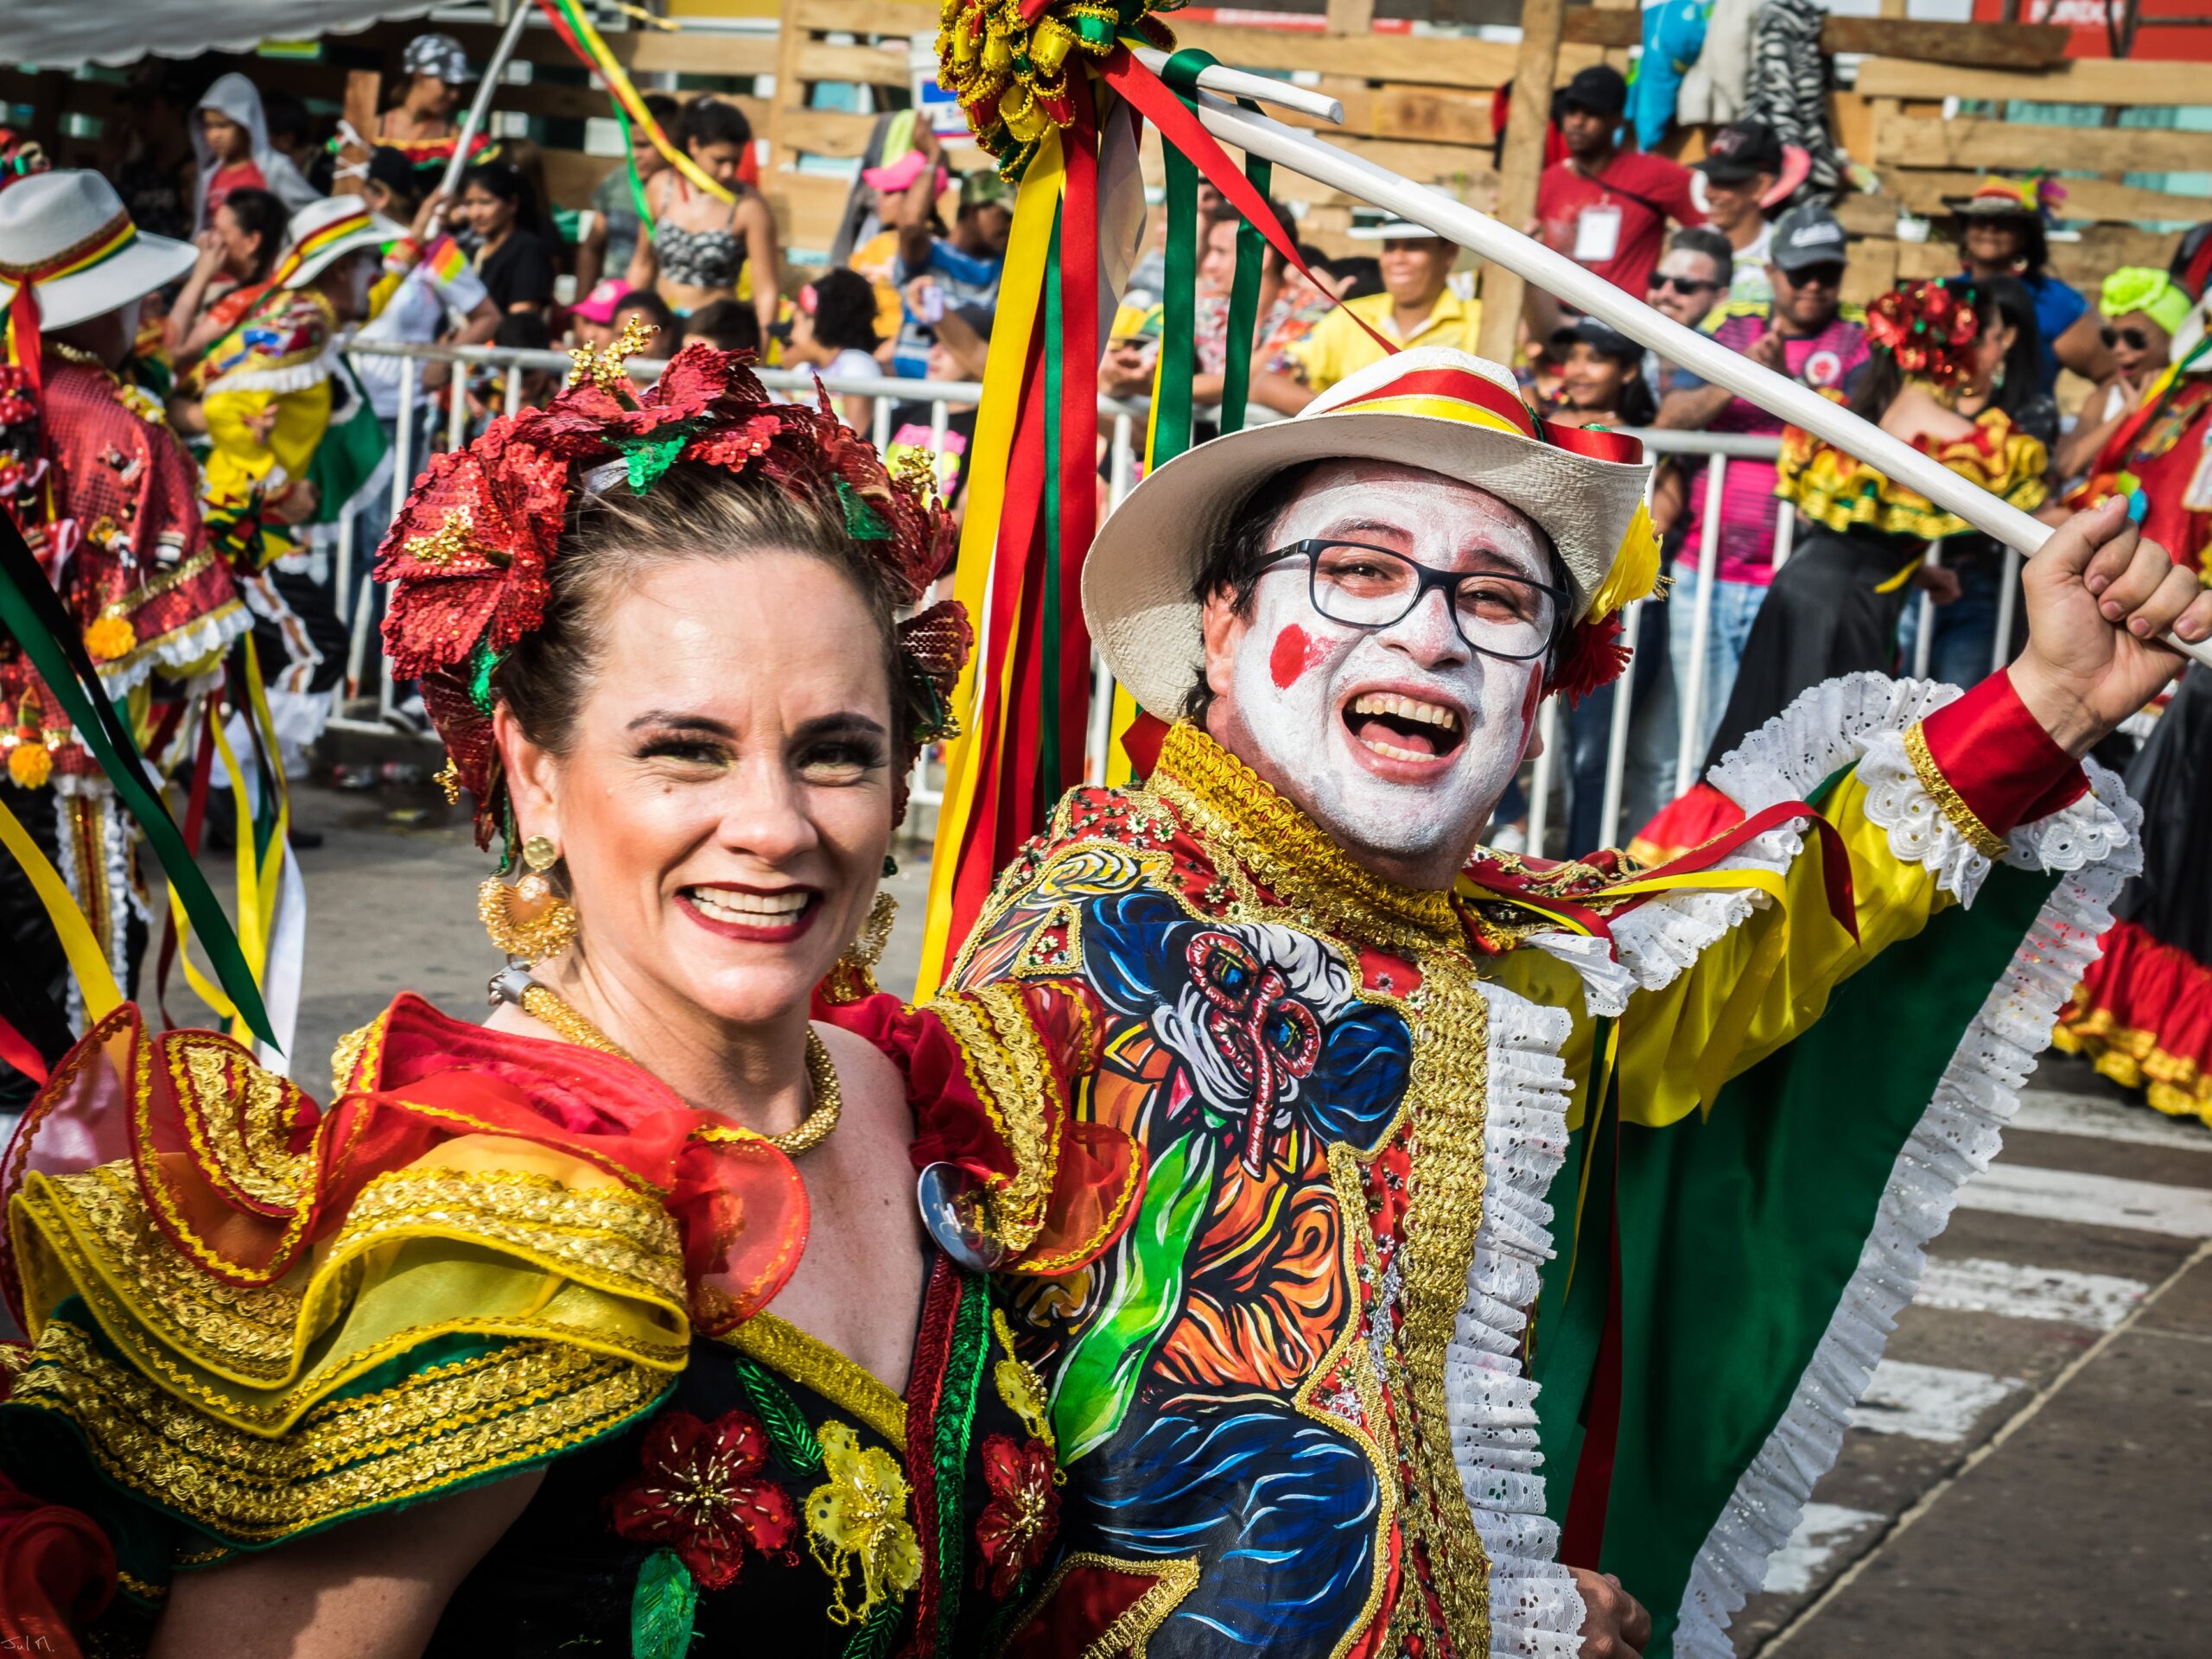 Que dia começa o Carnaval este ano?